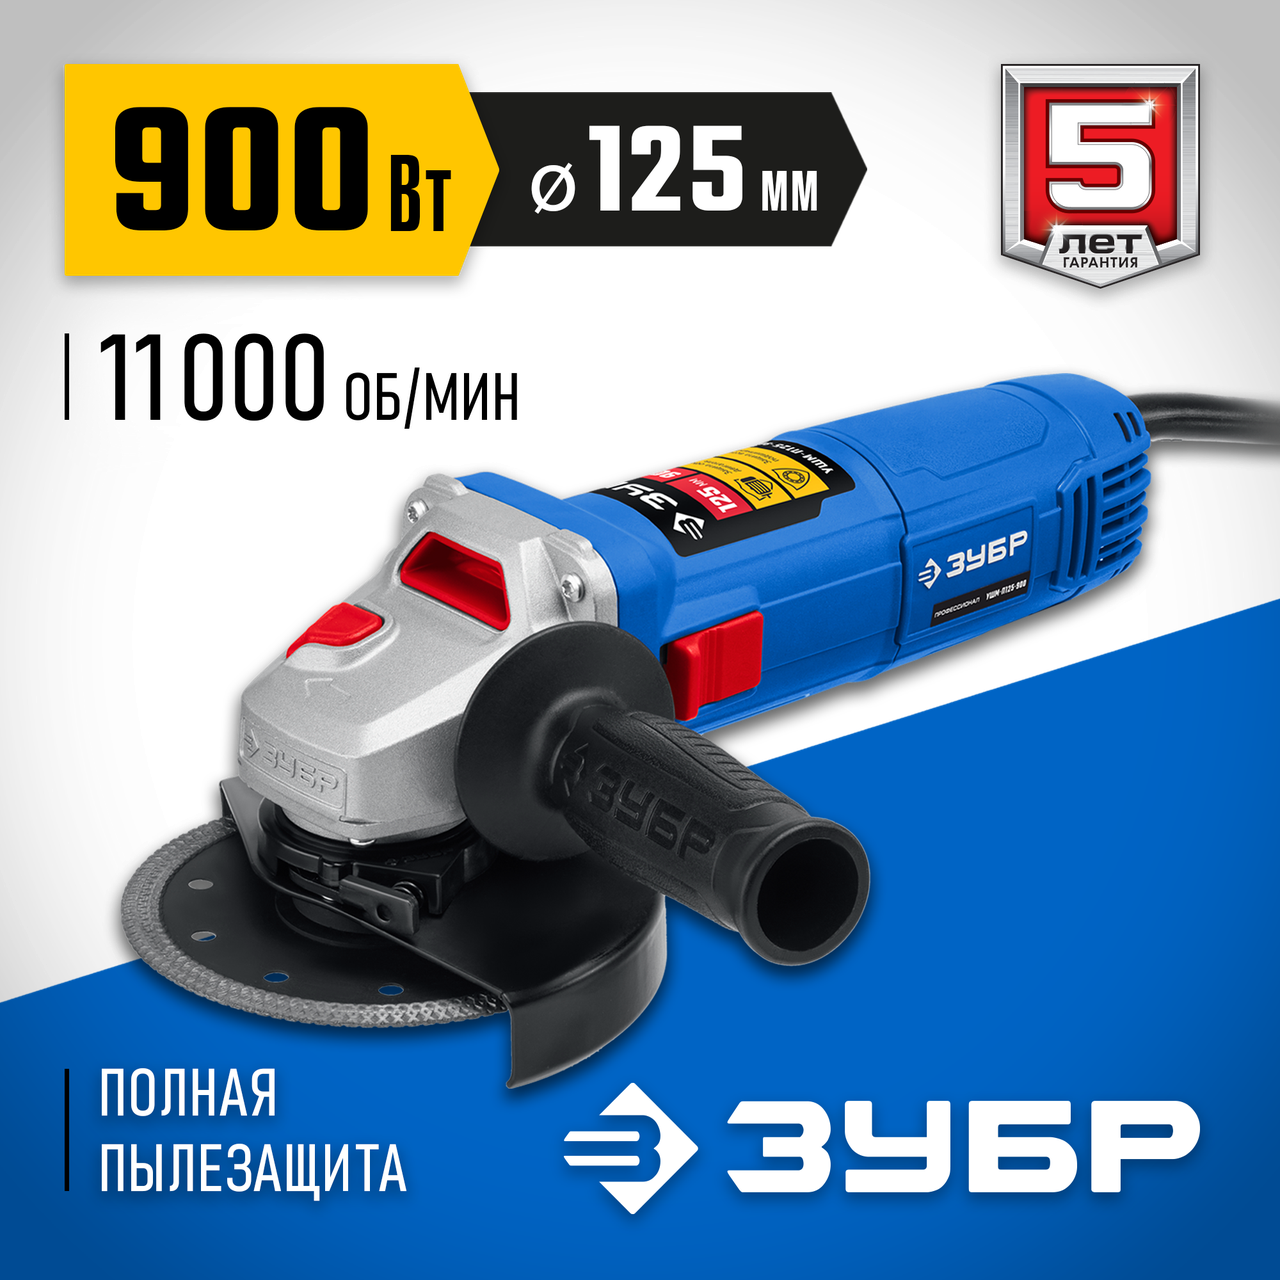 ЗУБР 900 Вт, 125 мм, углошлифовальная машина (болгарка) УШМ-П125-900 Профессионал